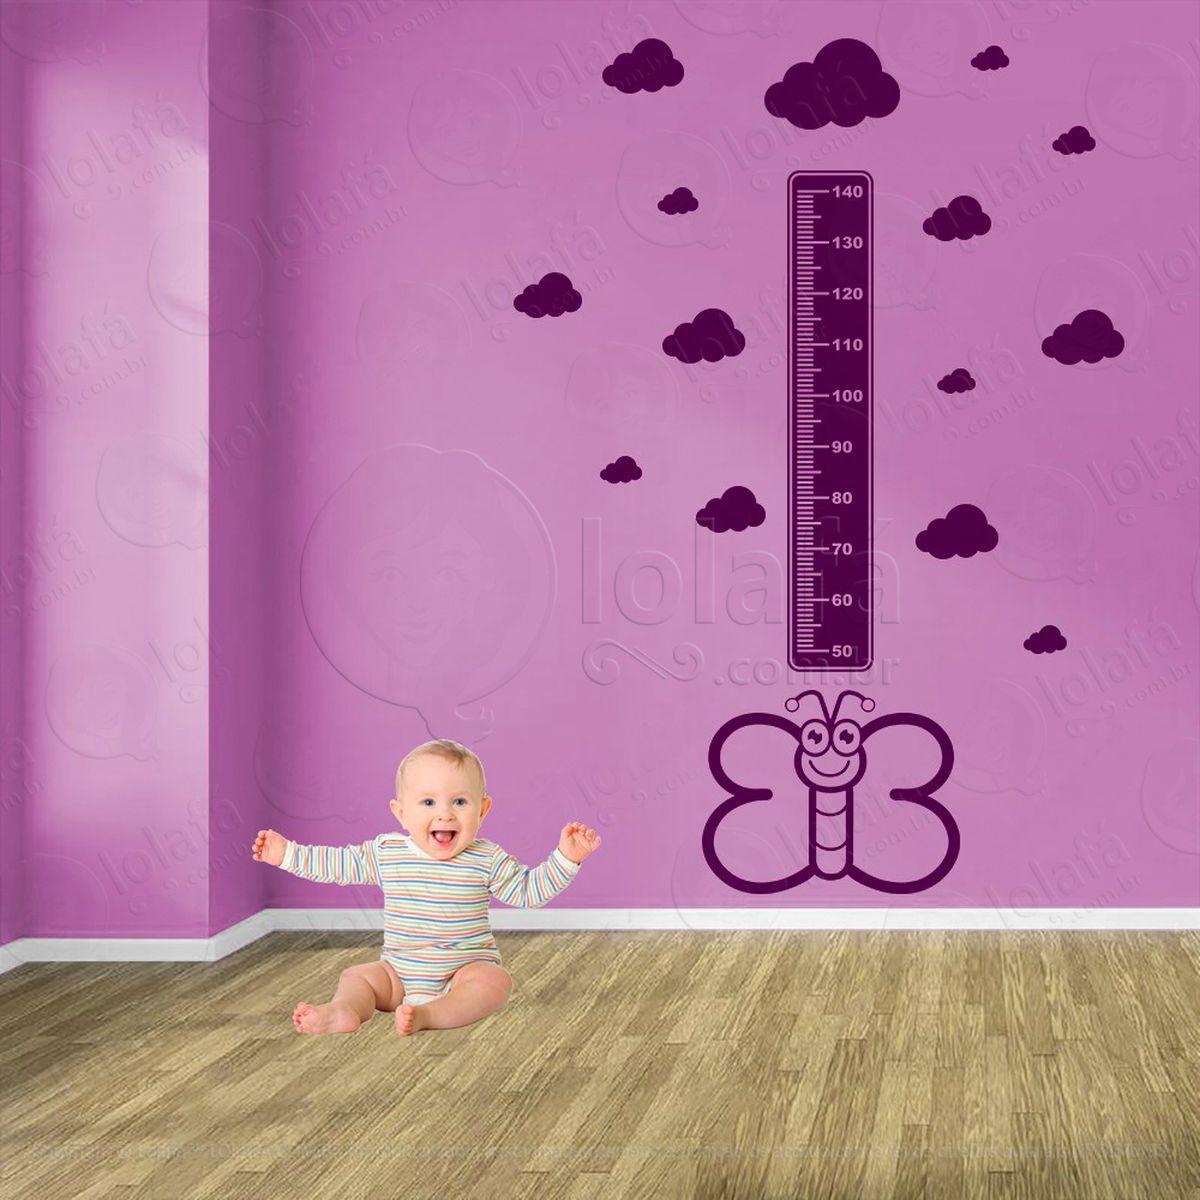 borboleta e nuvens adesivo régua de crescimento infantil, medidor de altura para quarto, porta e parede - mod:546